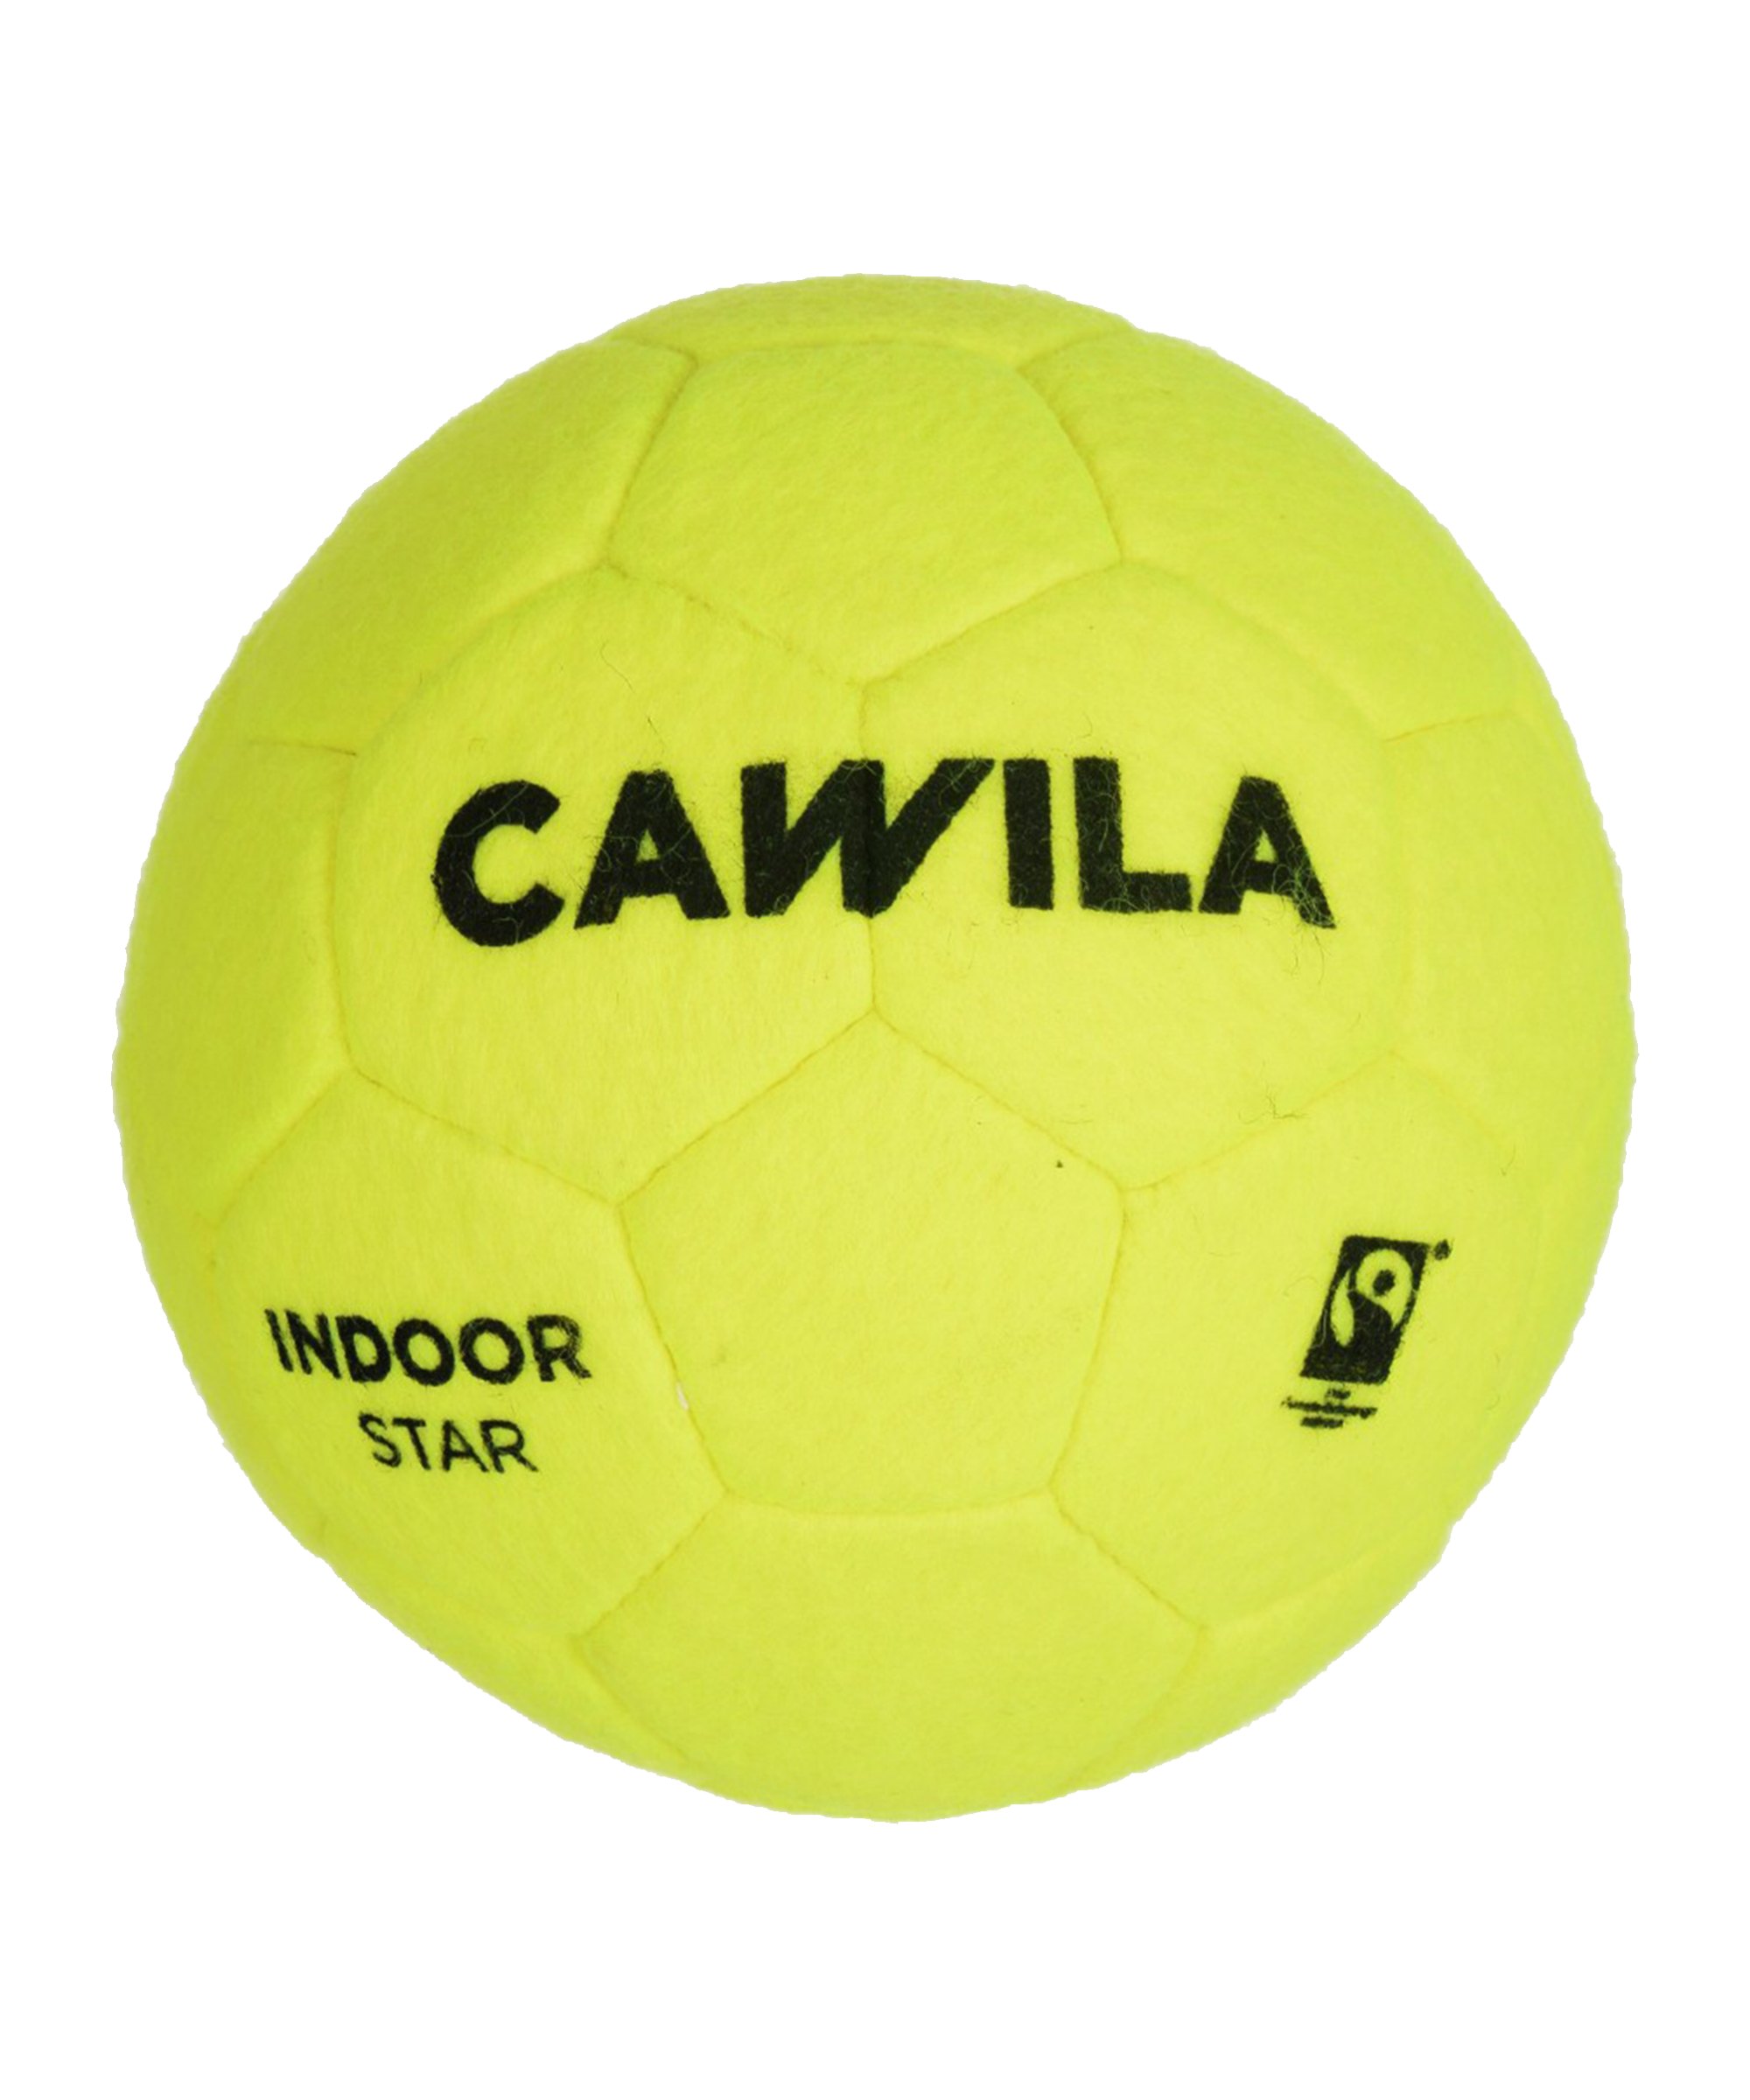 Cawila Indoor Star Fairtrade Trainingsball Gr. 4 Gelb - gelb